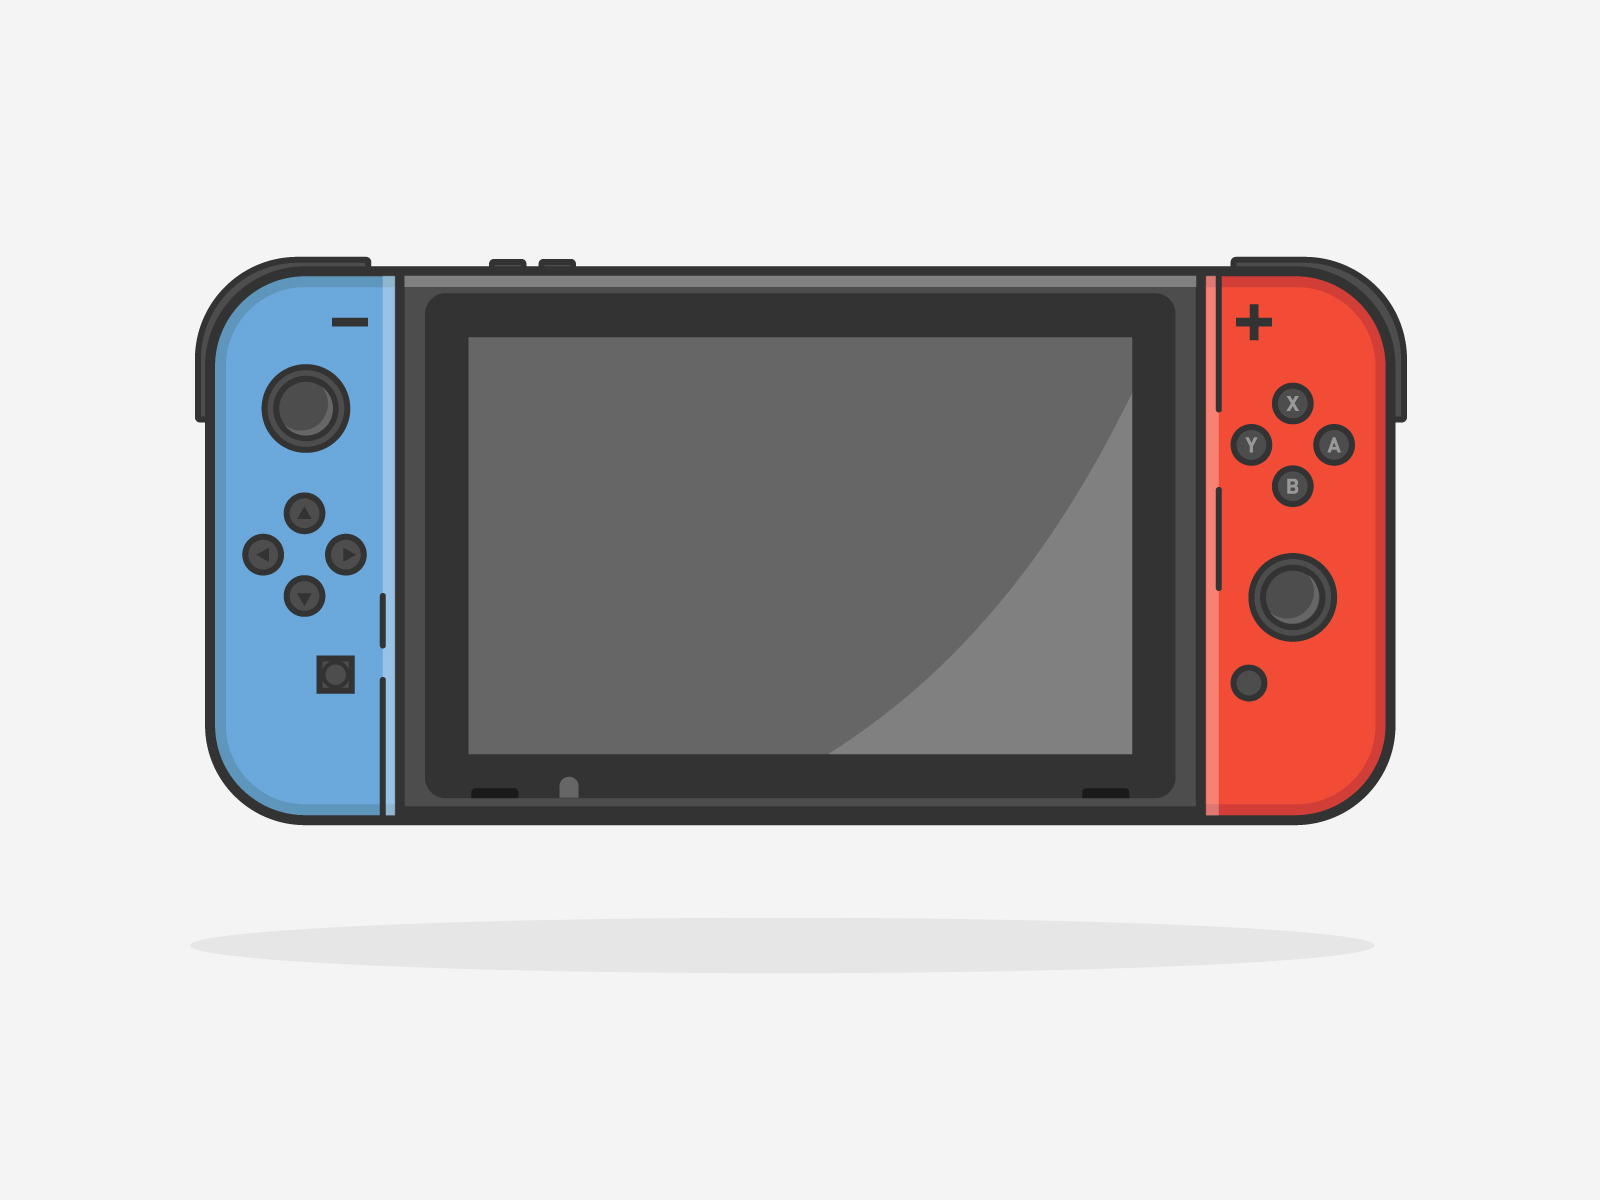 Nintendo Switch by Odom Sok on Dribbble